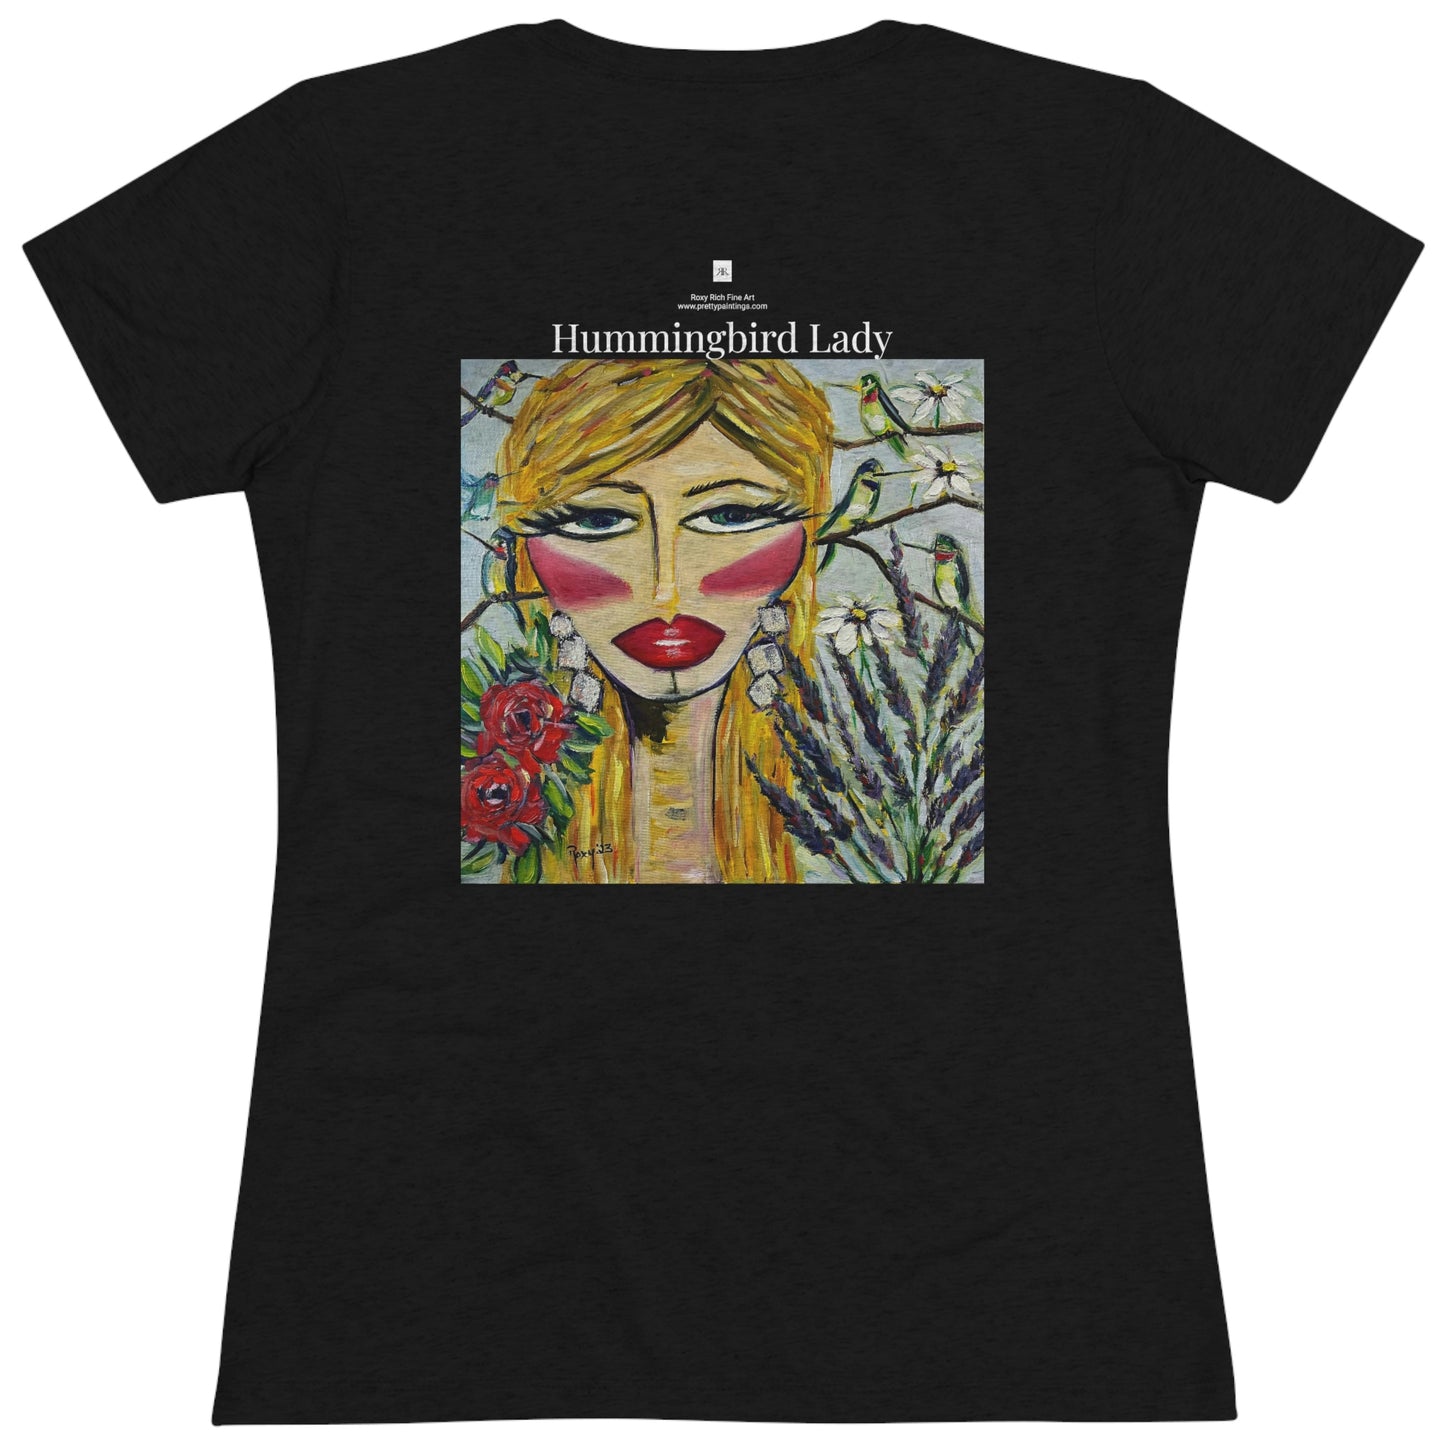 Hummingbird Lady (diseño en la espalda) Camiseta Triblend Tee ajustada para mujer